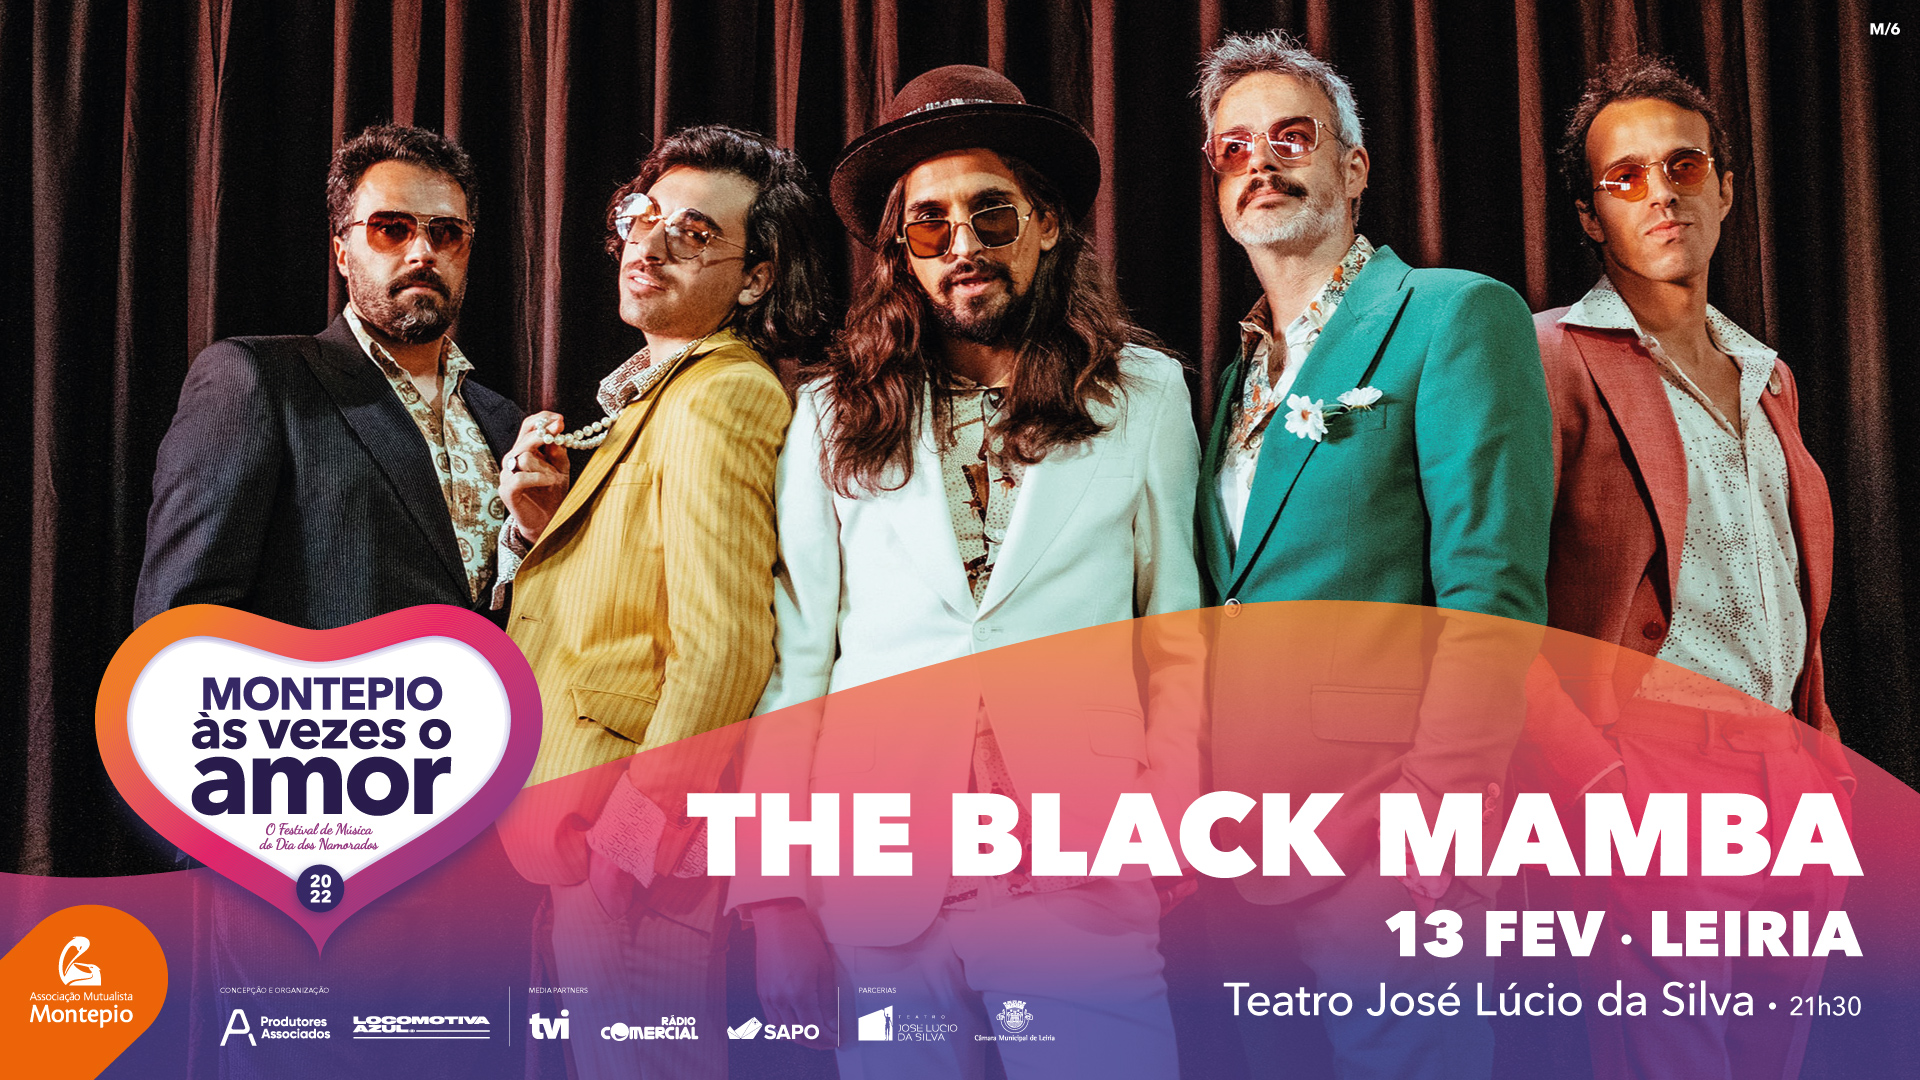 13 FEV – THE BLACK MAMBA – Teatro José Lúcio da Silva, Leiria